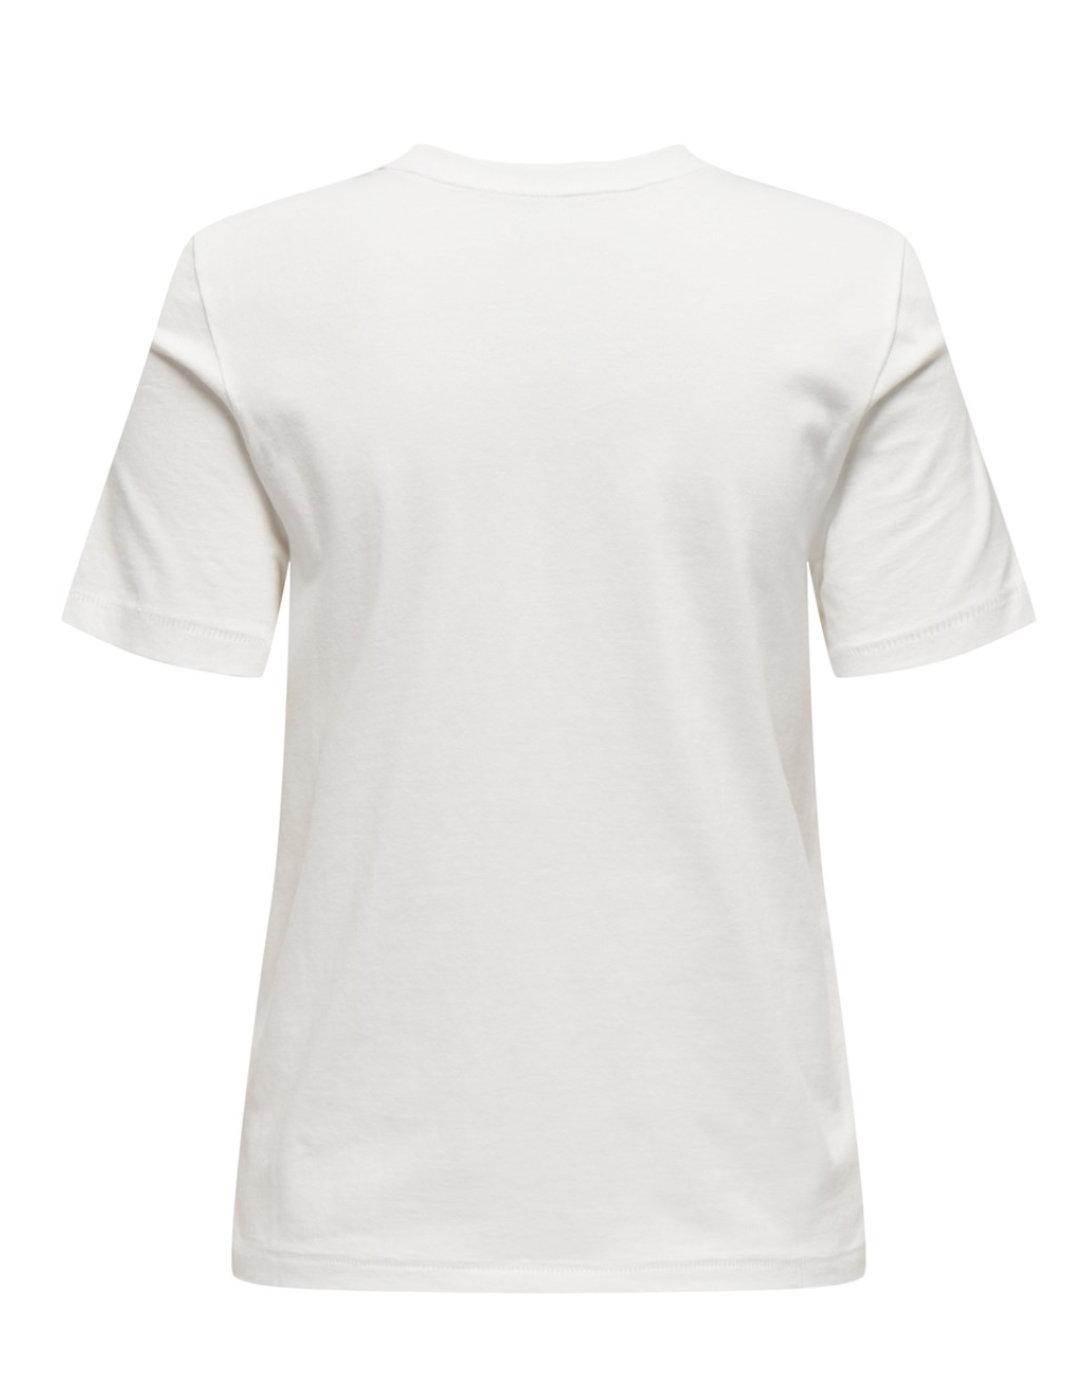 Camiseta Only Tribe blanca bolsillo abalorios de mujer